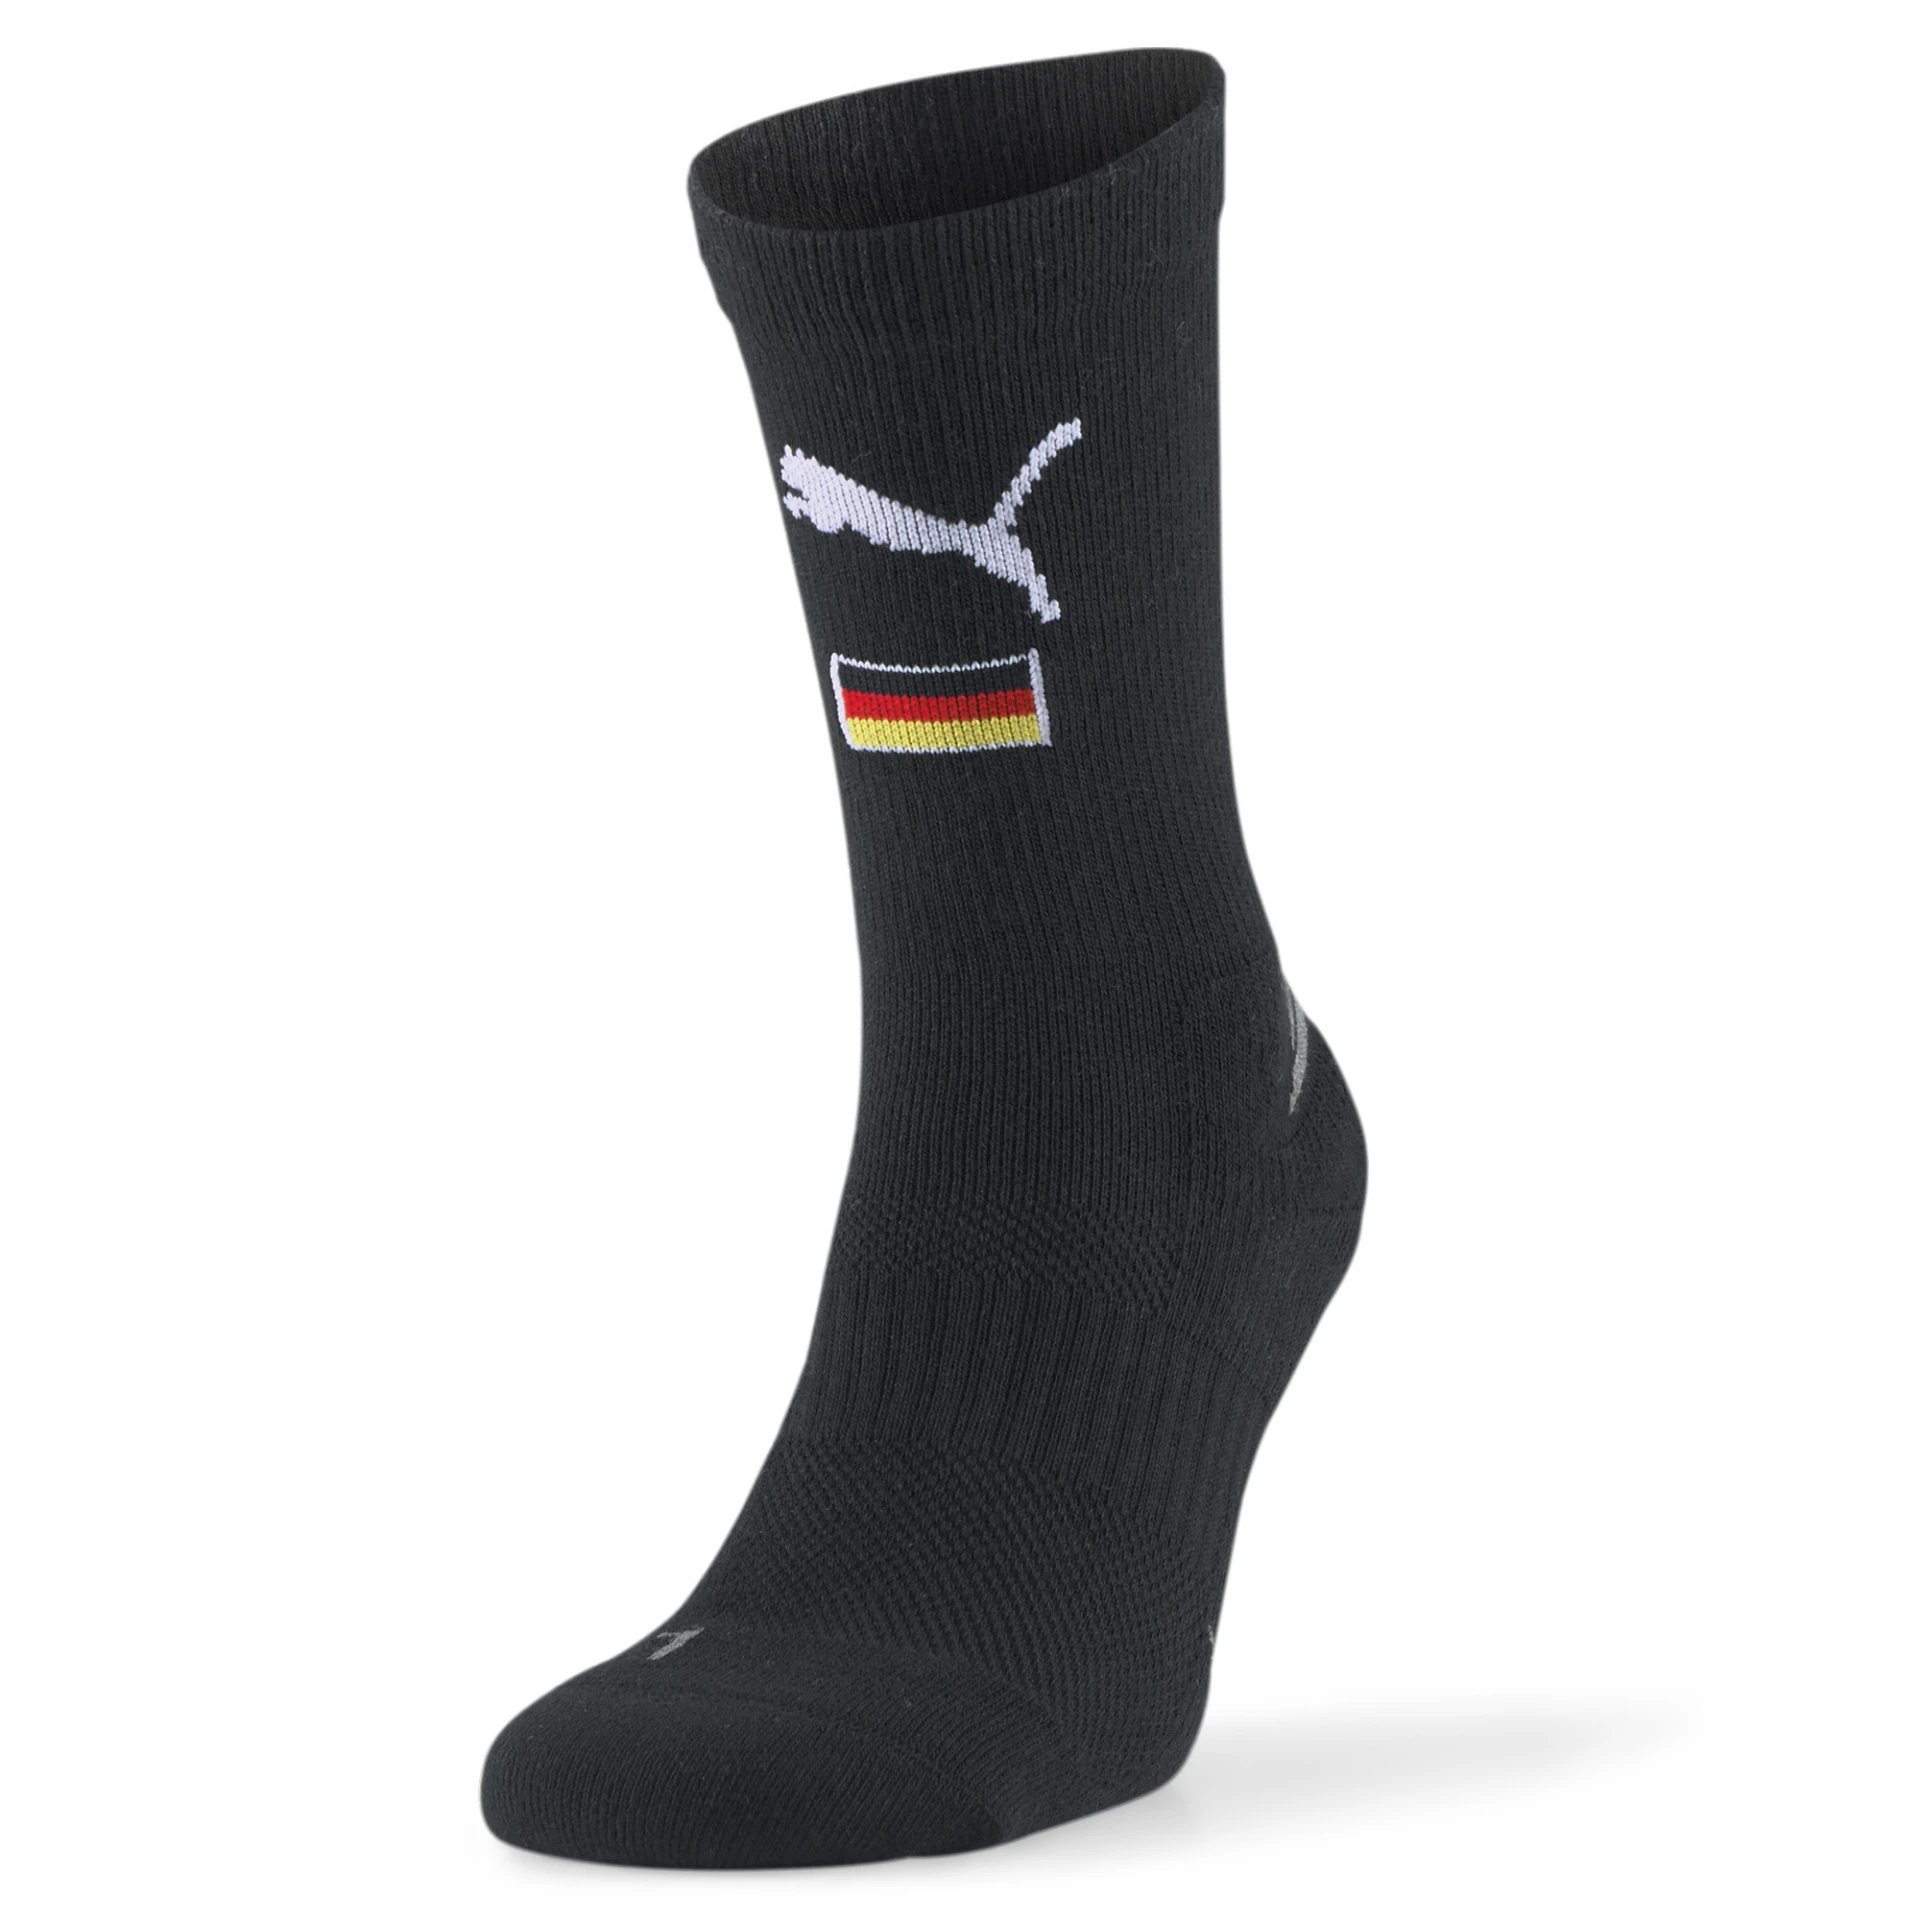 PUMA Team_Indoor_SMU_Germany_Socks 767626 002 PUMA BLACK